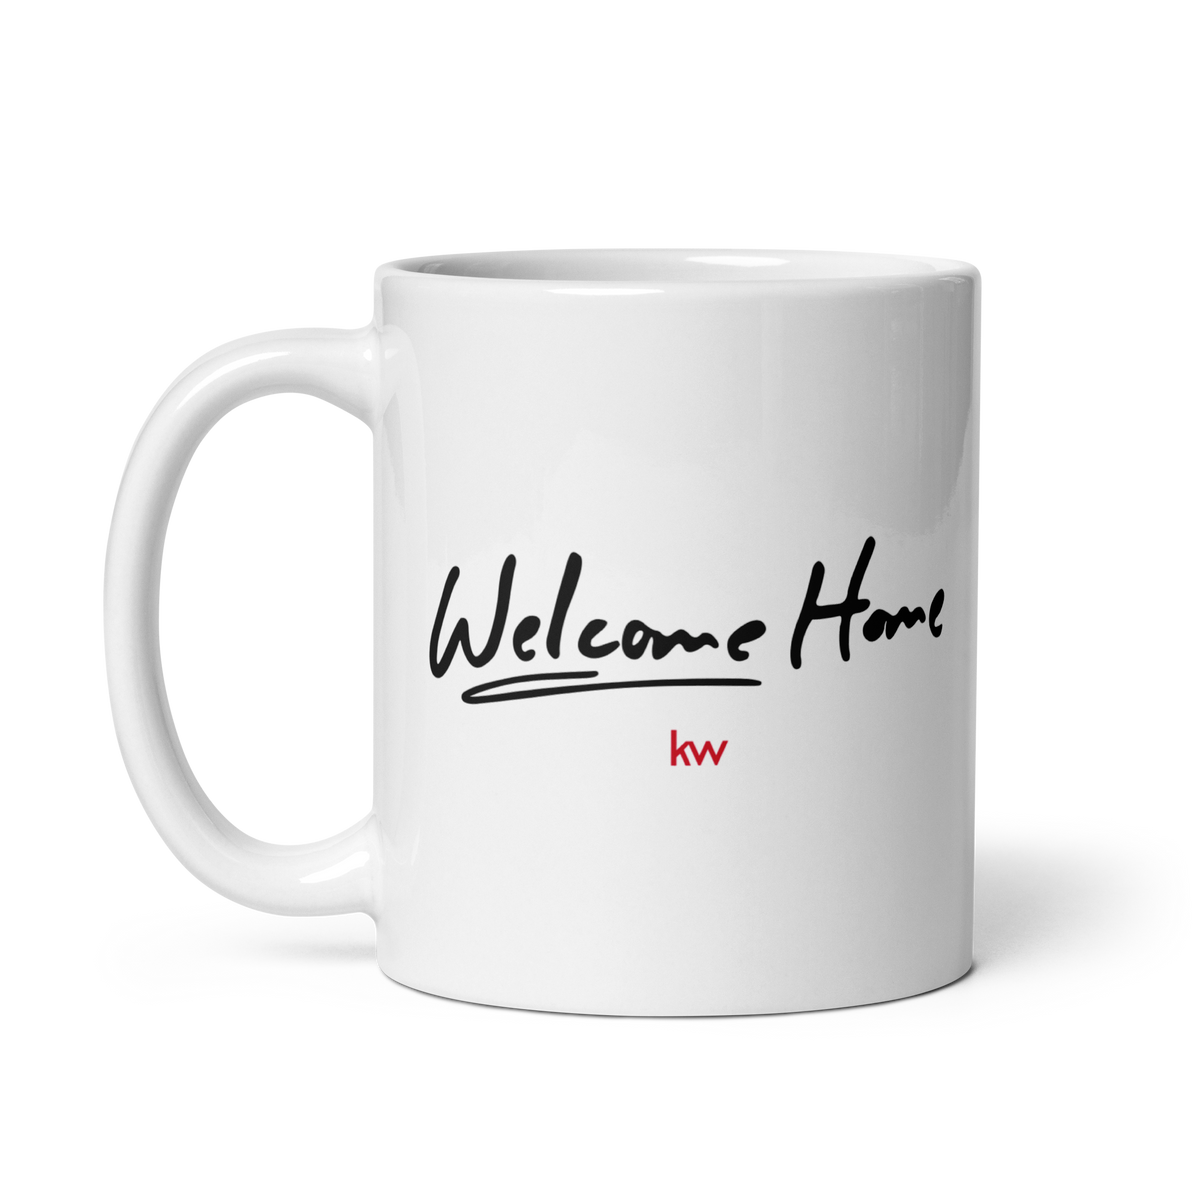 Mug - Welcome Home